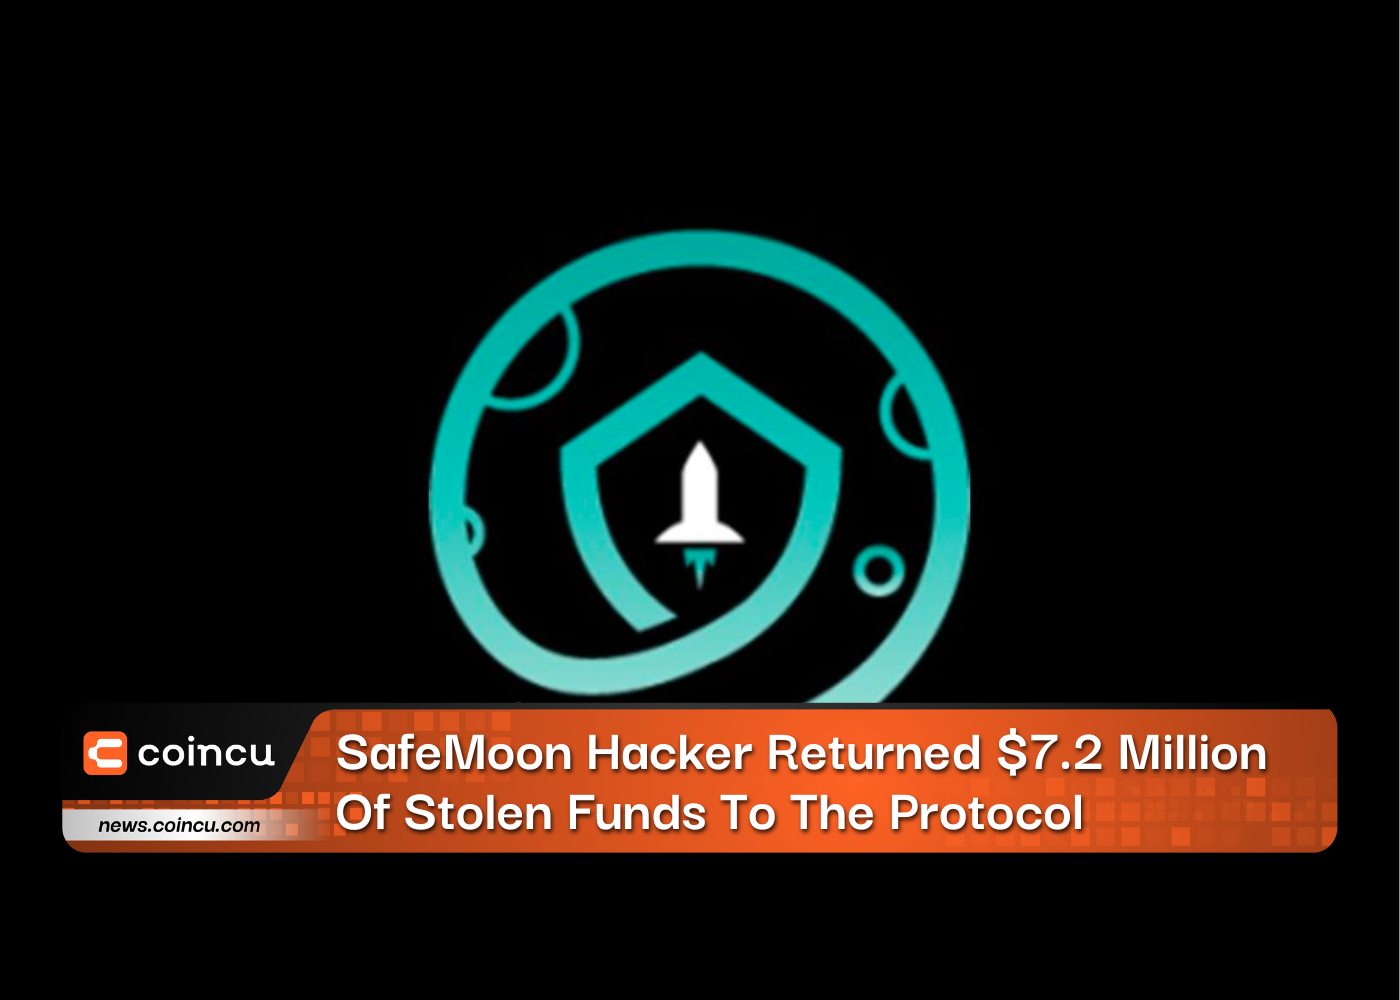 SafeMoon Hacker a restitué 7.2 millions de dollars de fonds volés au protocole